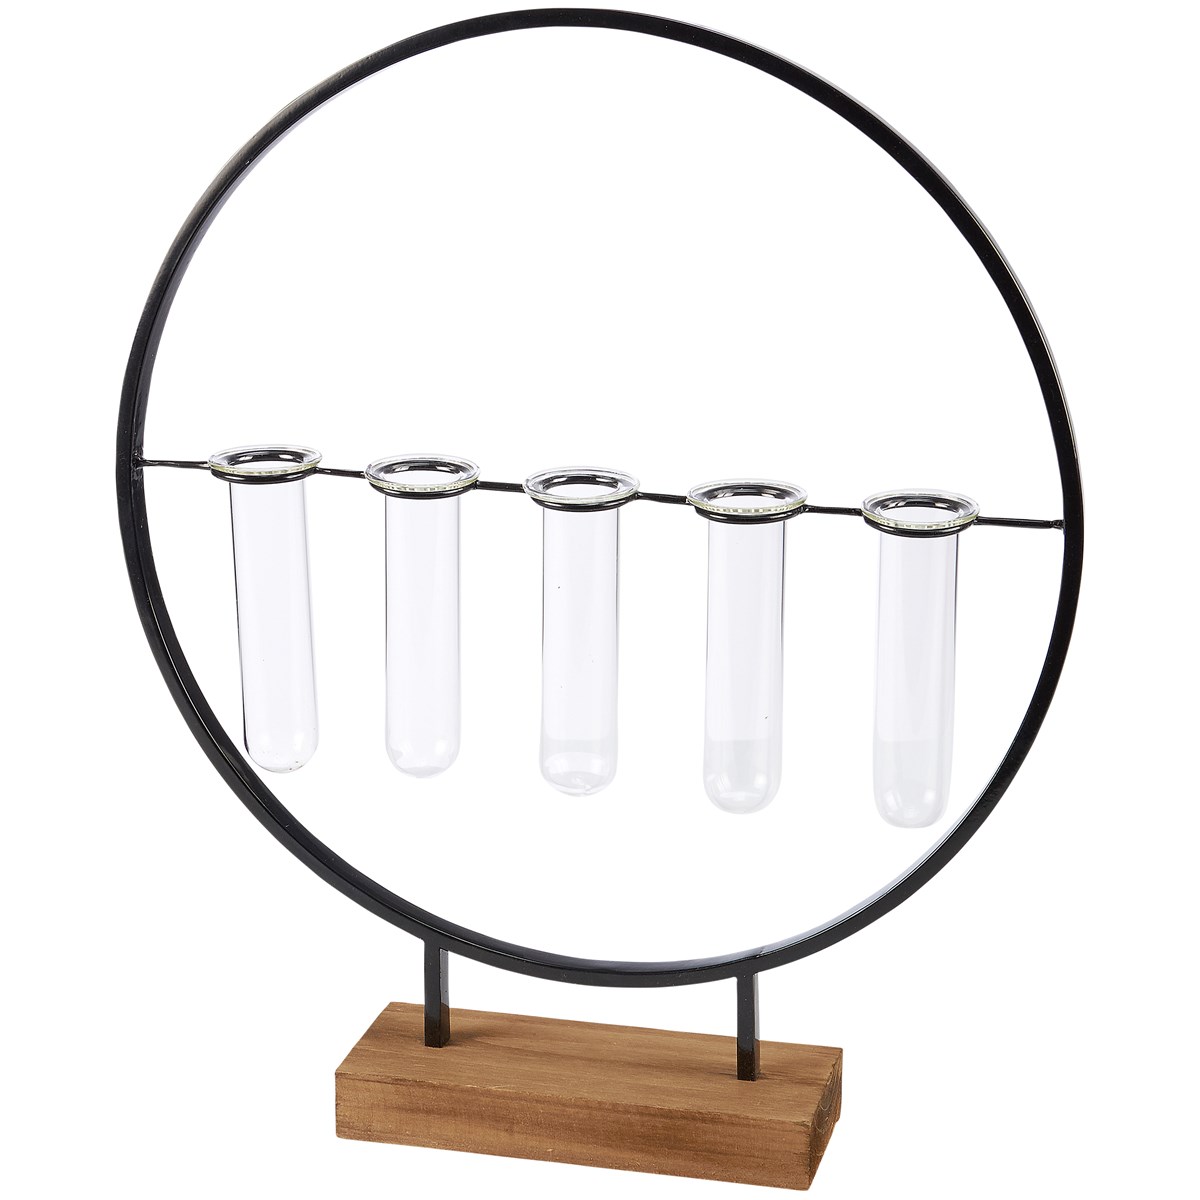 Five Stemmed Test Tube Vase - Metal, Wood, Glass